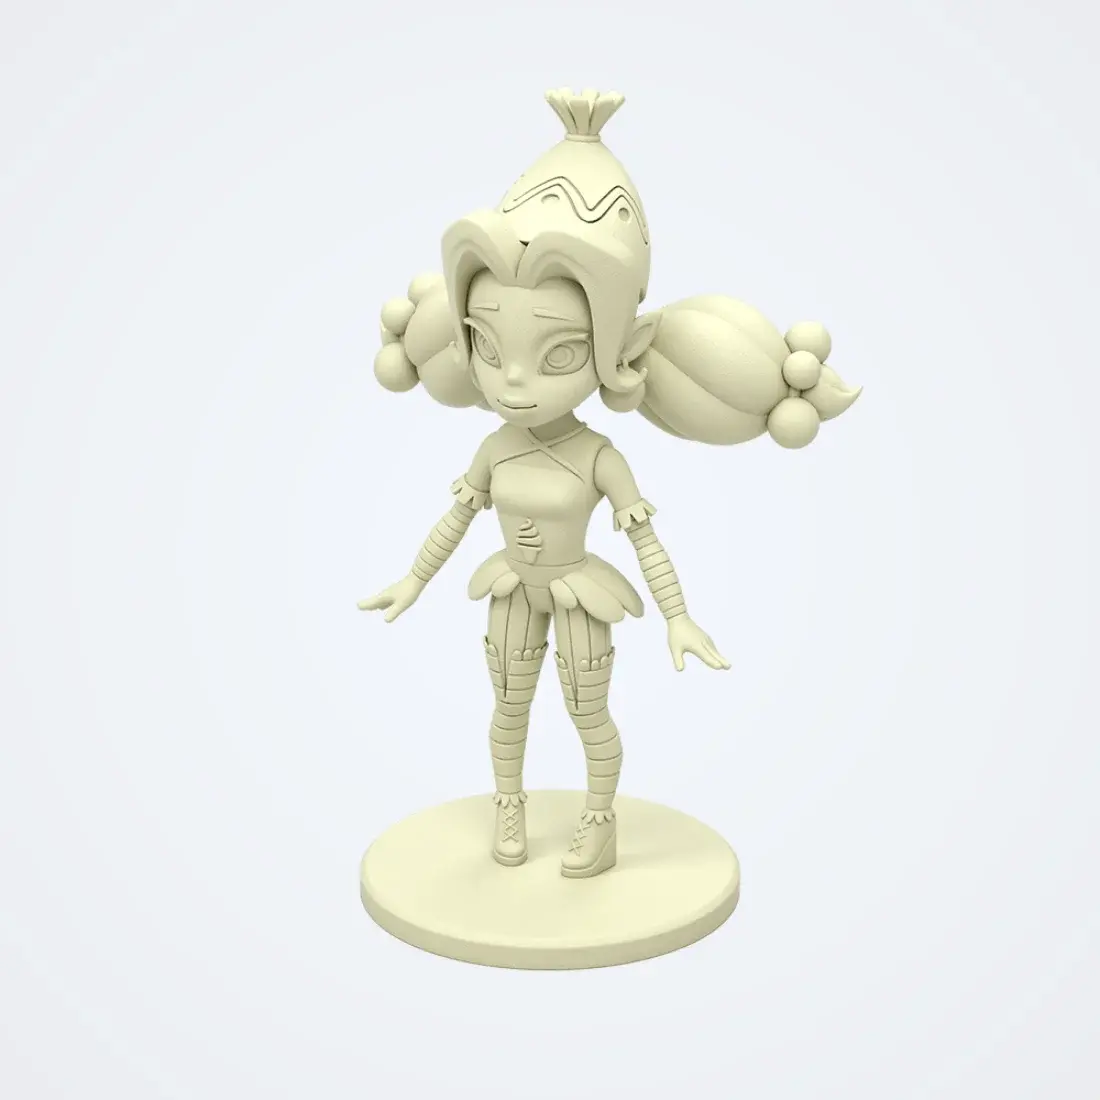 3D model of character 1 by devabit